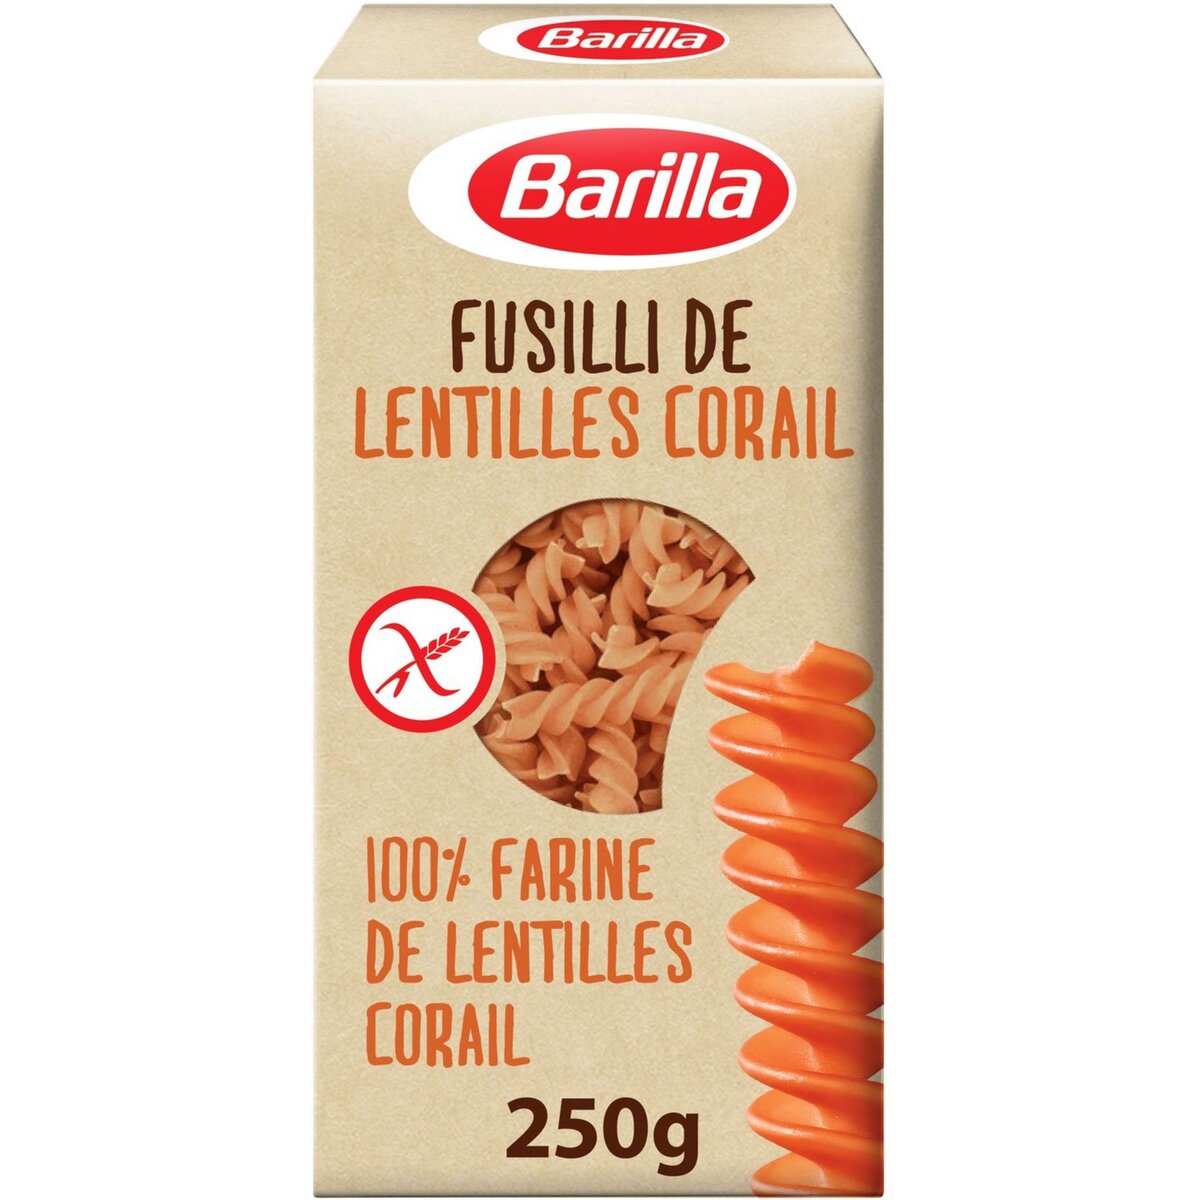 BARILLA Fusilli 100% farine de lentilles corail sans gluten 250g